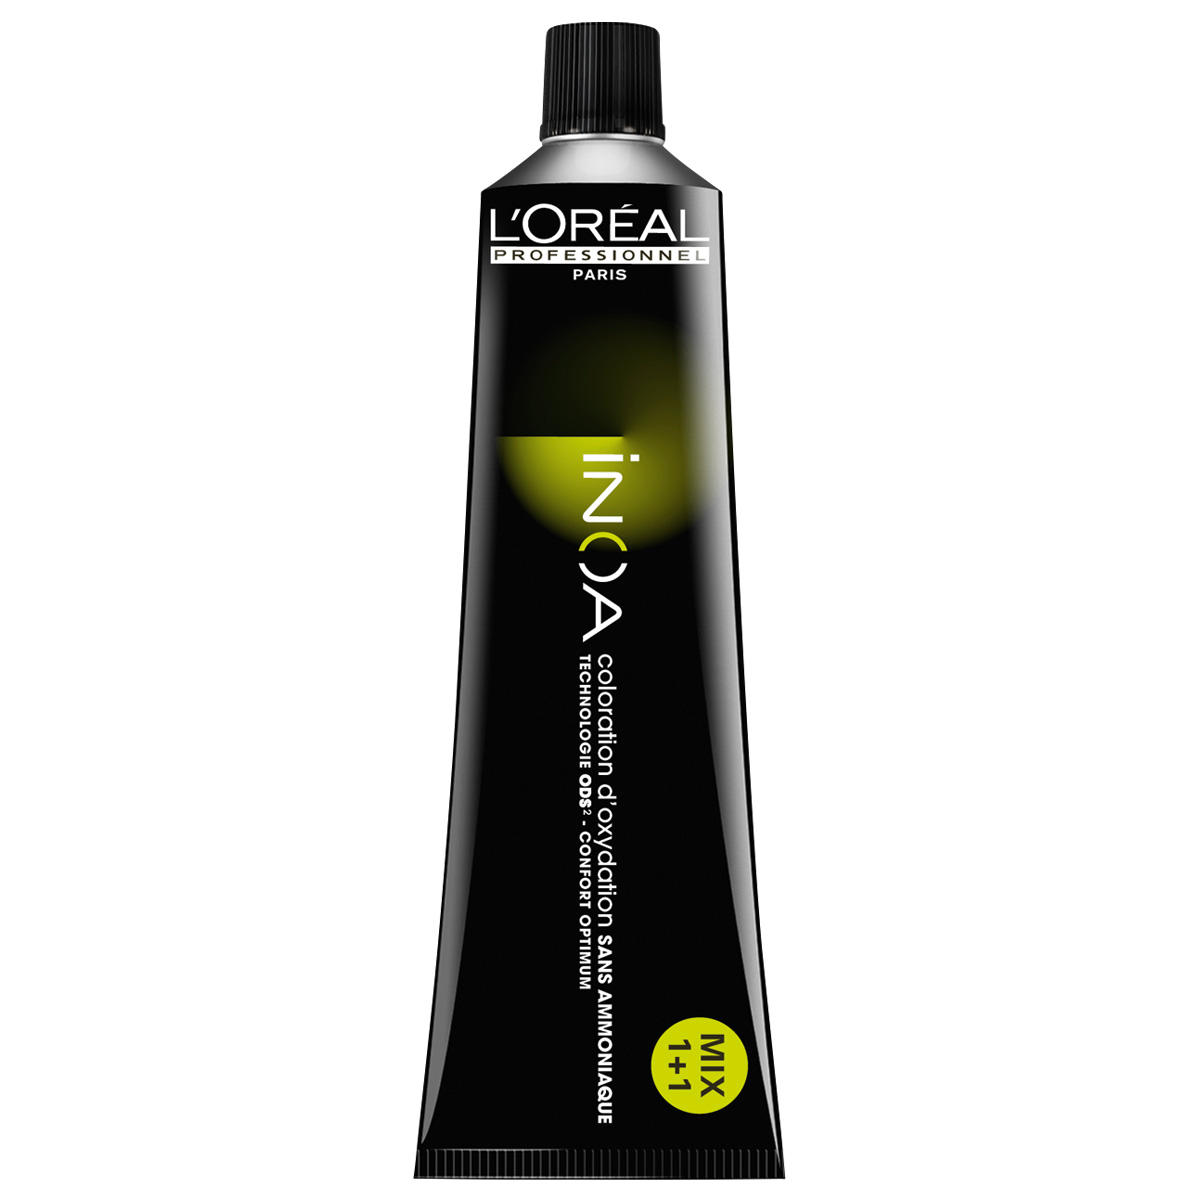 L'Oréal Professionnel Paris Coloration 5,0 brun clair intense, Tube 60 ml